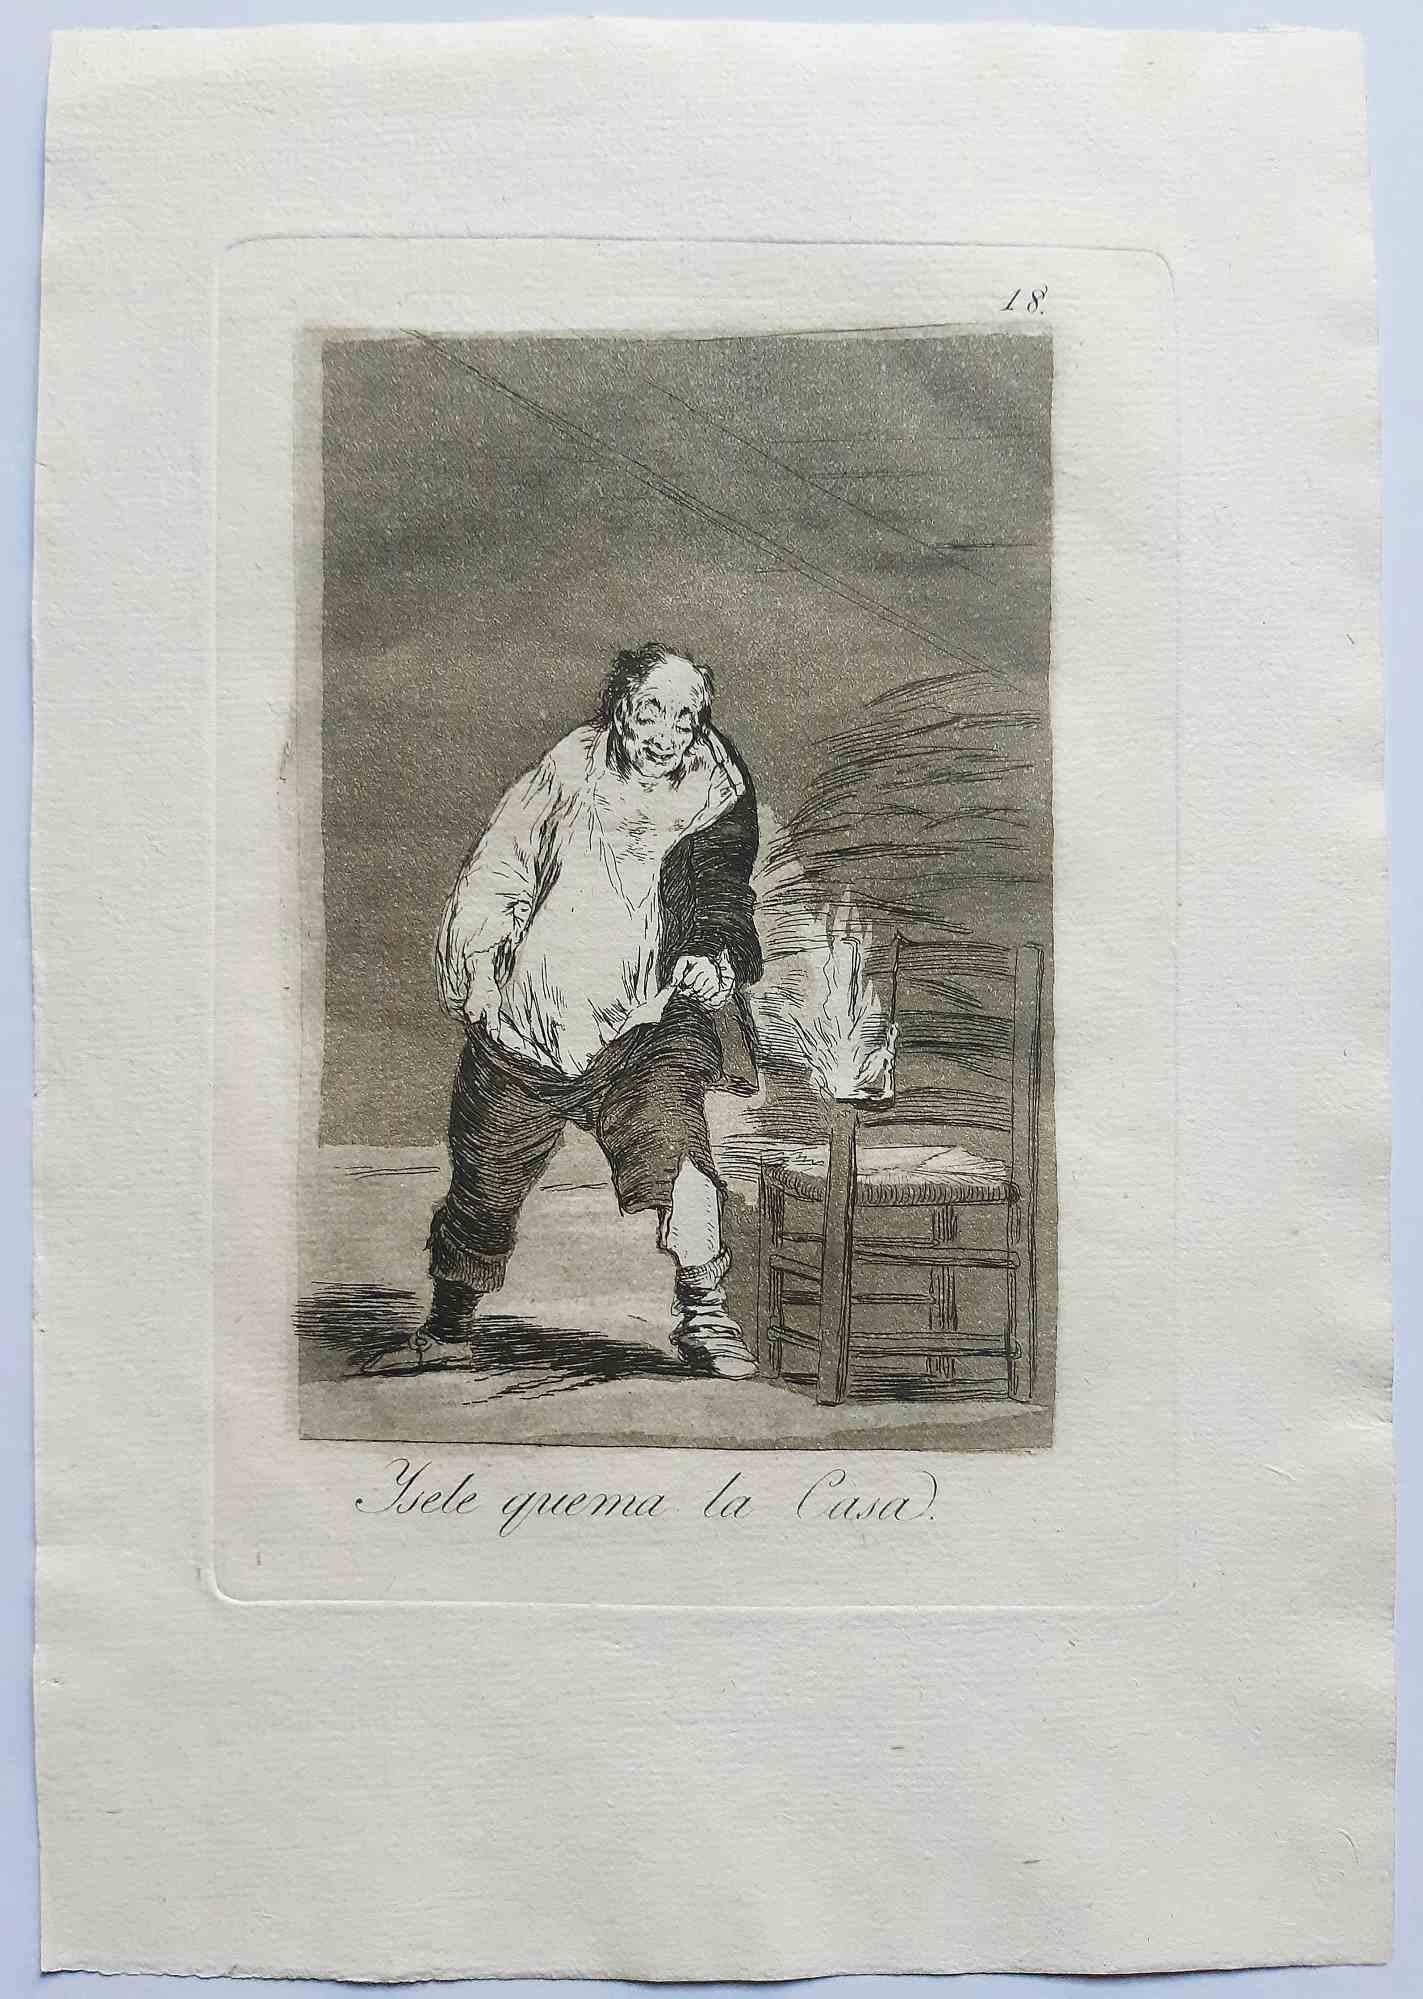 Y se le quema la casa ist ein originales Kunstwerk des Künstlers Francisco Goya, das 1799 veröffentlicht wurde.

Radierung auf Papier.

Die Radierung ist Teil der seltenen Erstausgabe von "Los Caprichos", die 1799 von der Calcografia Nacional für